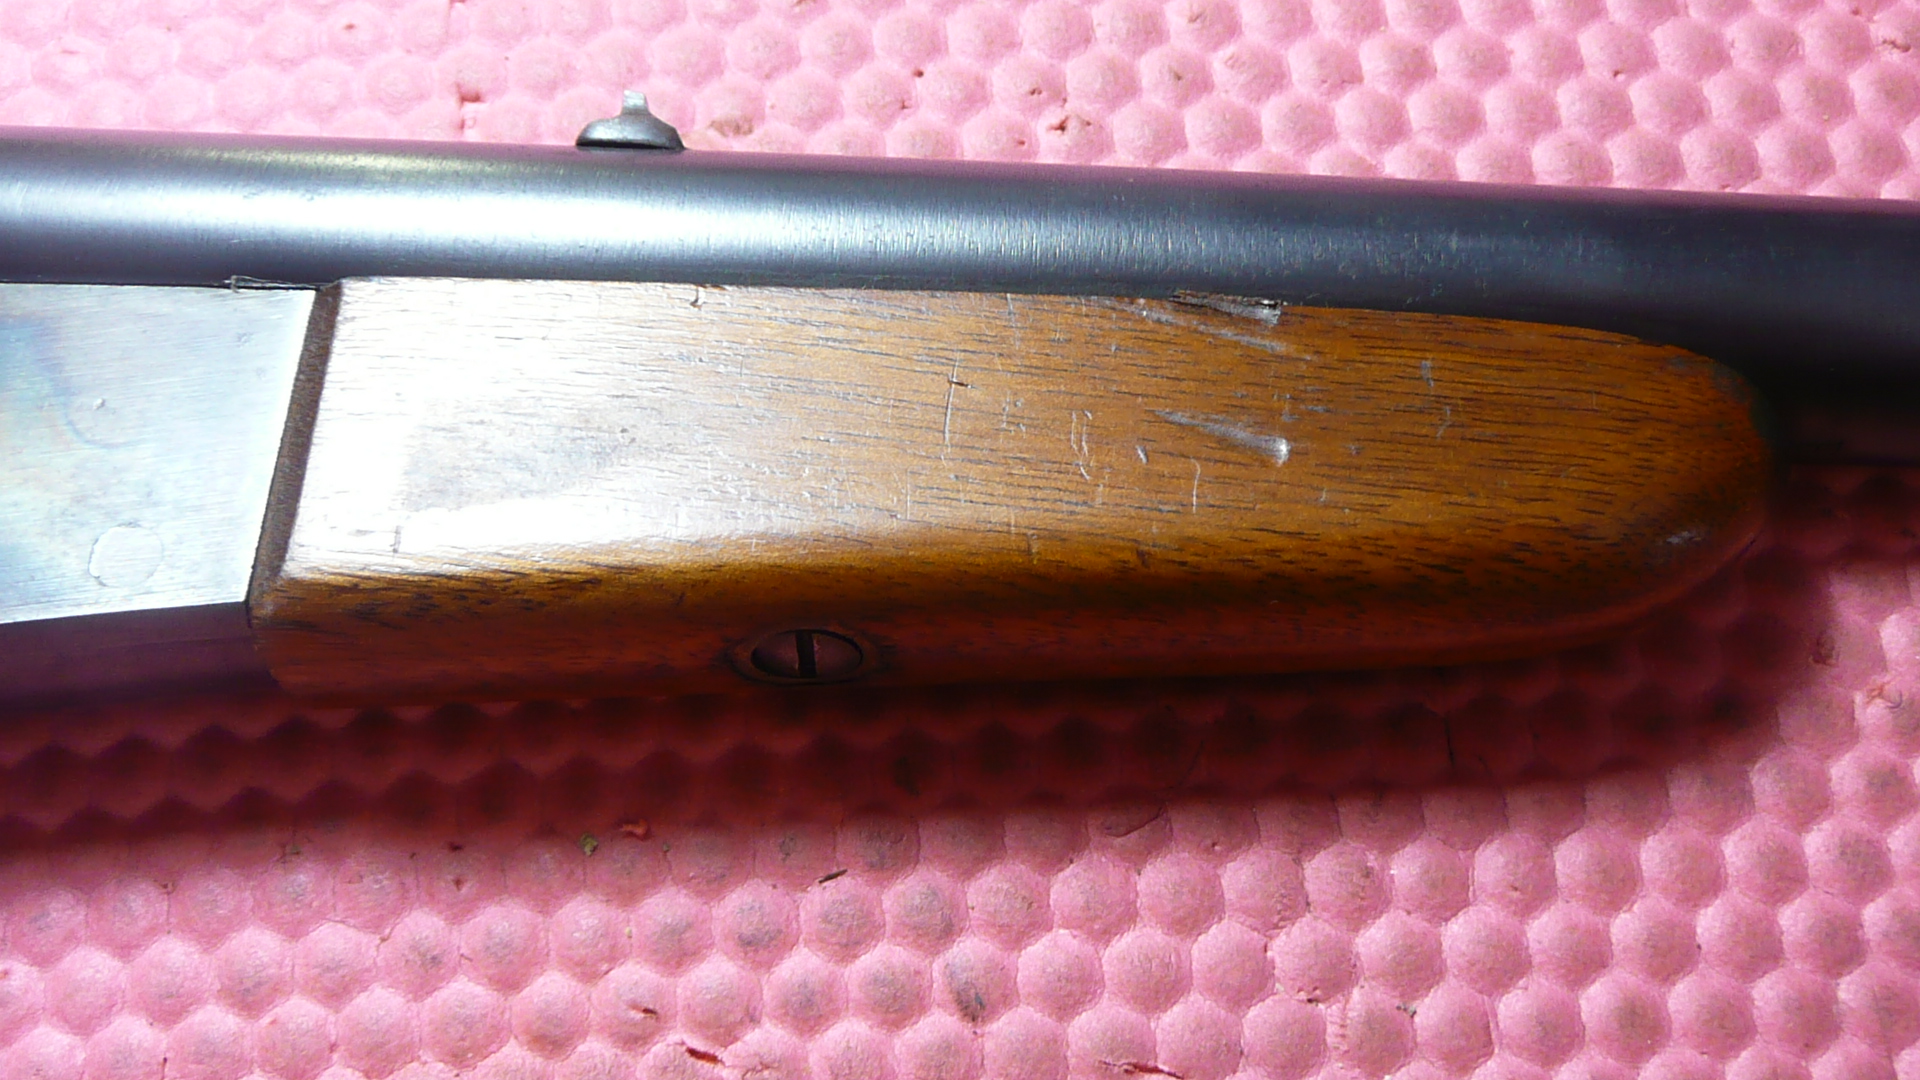 Remington Boy's Rifle P1060518